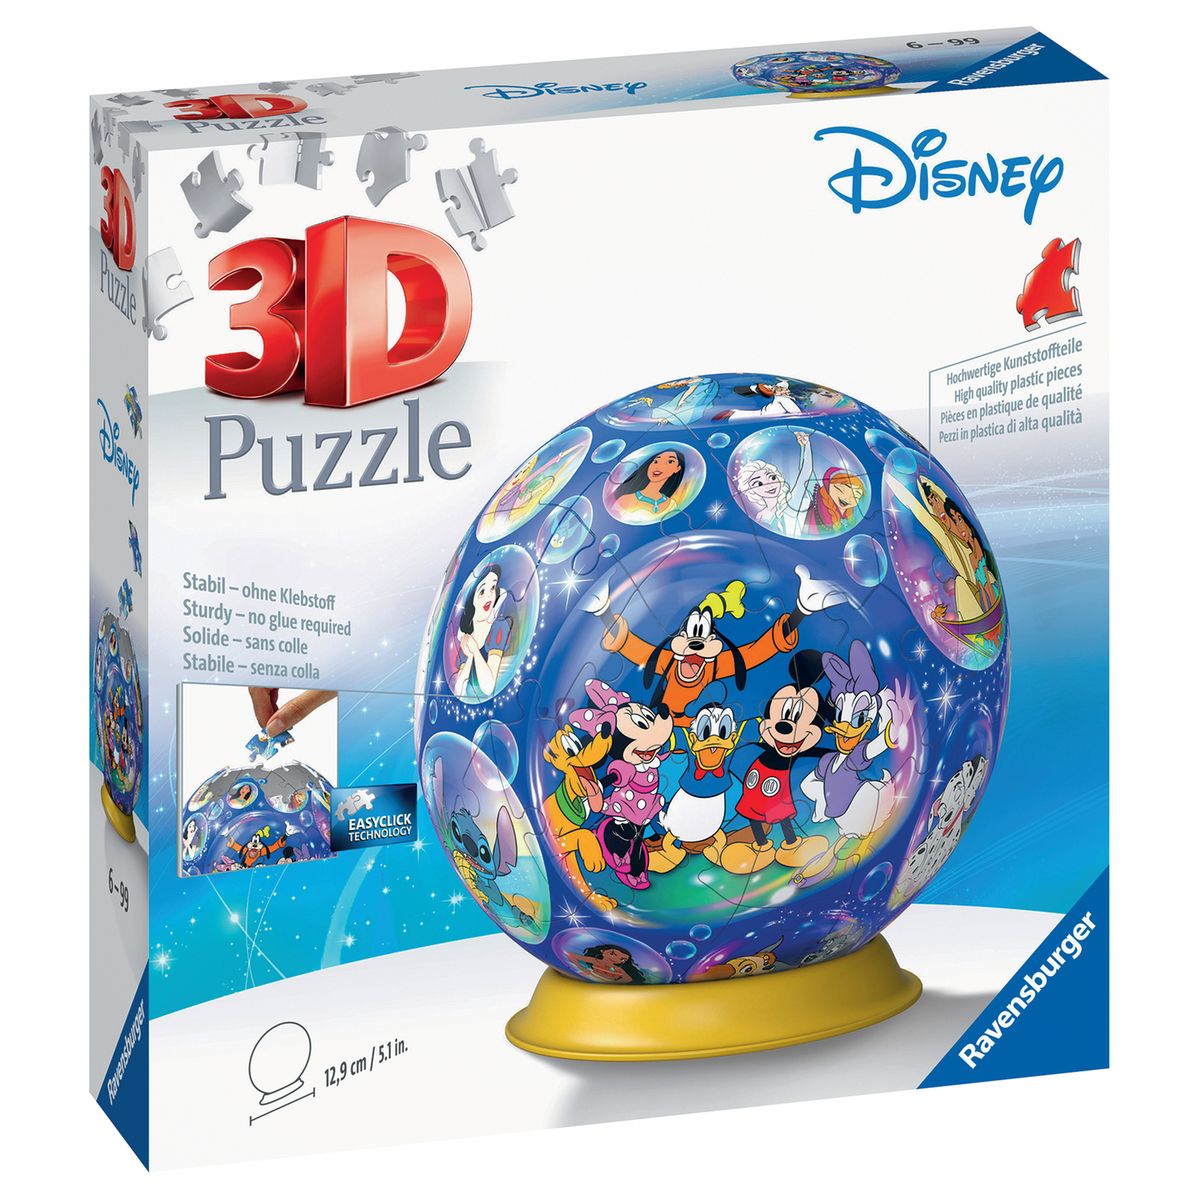 Puzzle 3D, balle de jeu, jouet éducatif, casse-tête pour enfants et